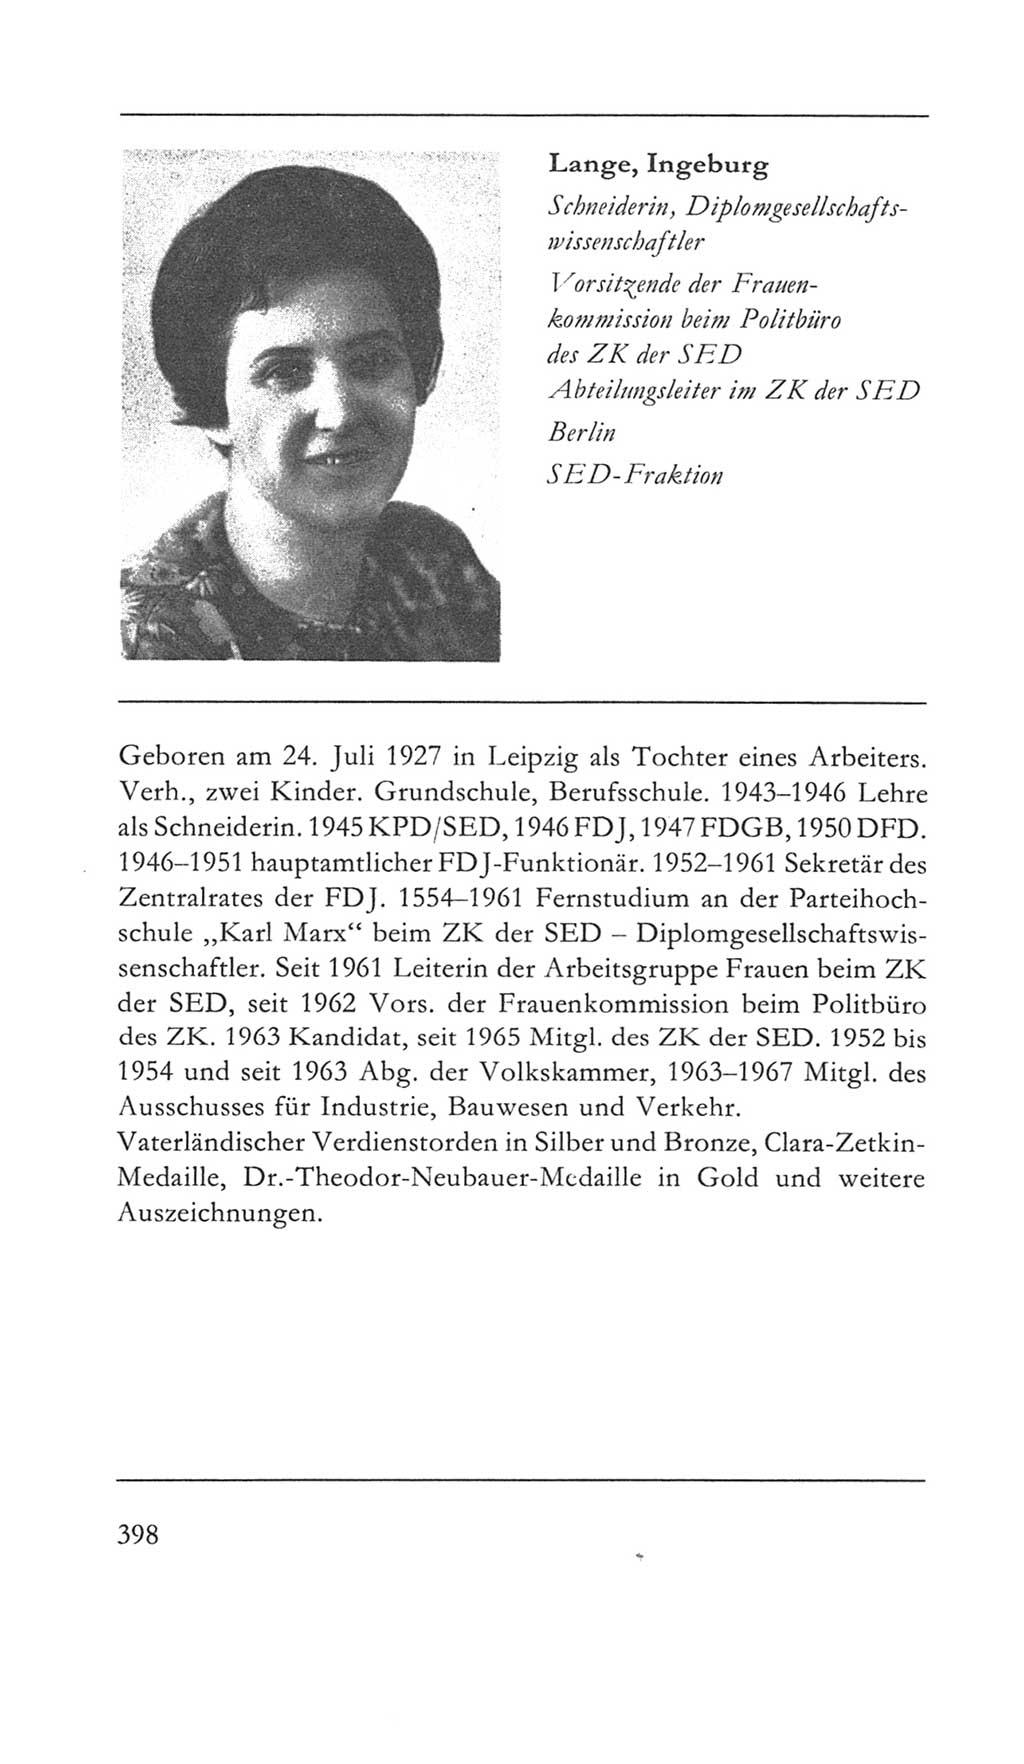 Volkskammer (VK) der Deutschen Demokratischen Republik (DDR) 5. Wahlperiode 1967-1971, Seite 398 (VK. DDR 5. WP. 1967-1971, S. 398)